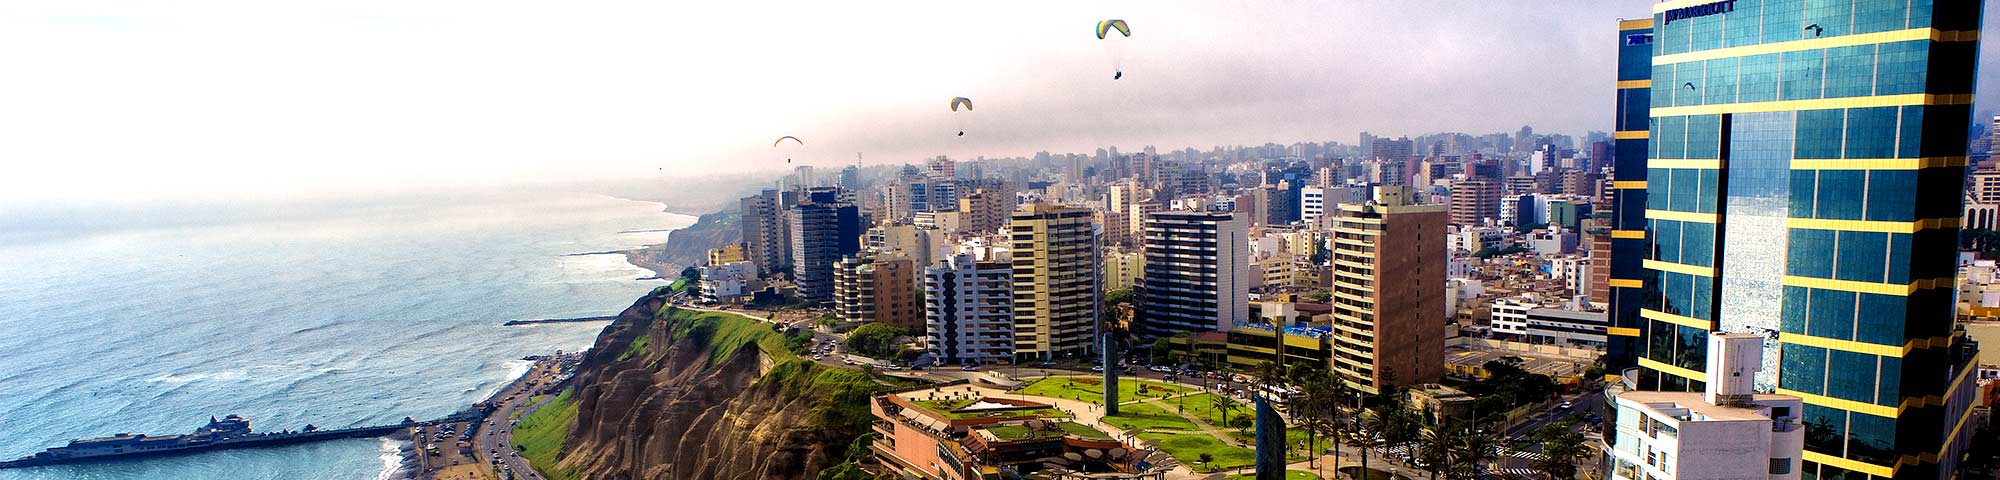 Vuelos Lima-Buenos Aires de JetSmart serán diarios a partir de diciembre 